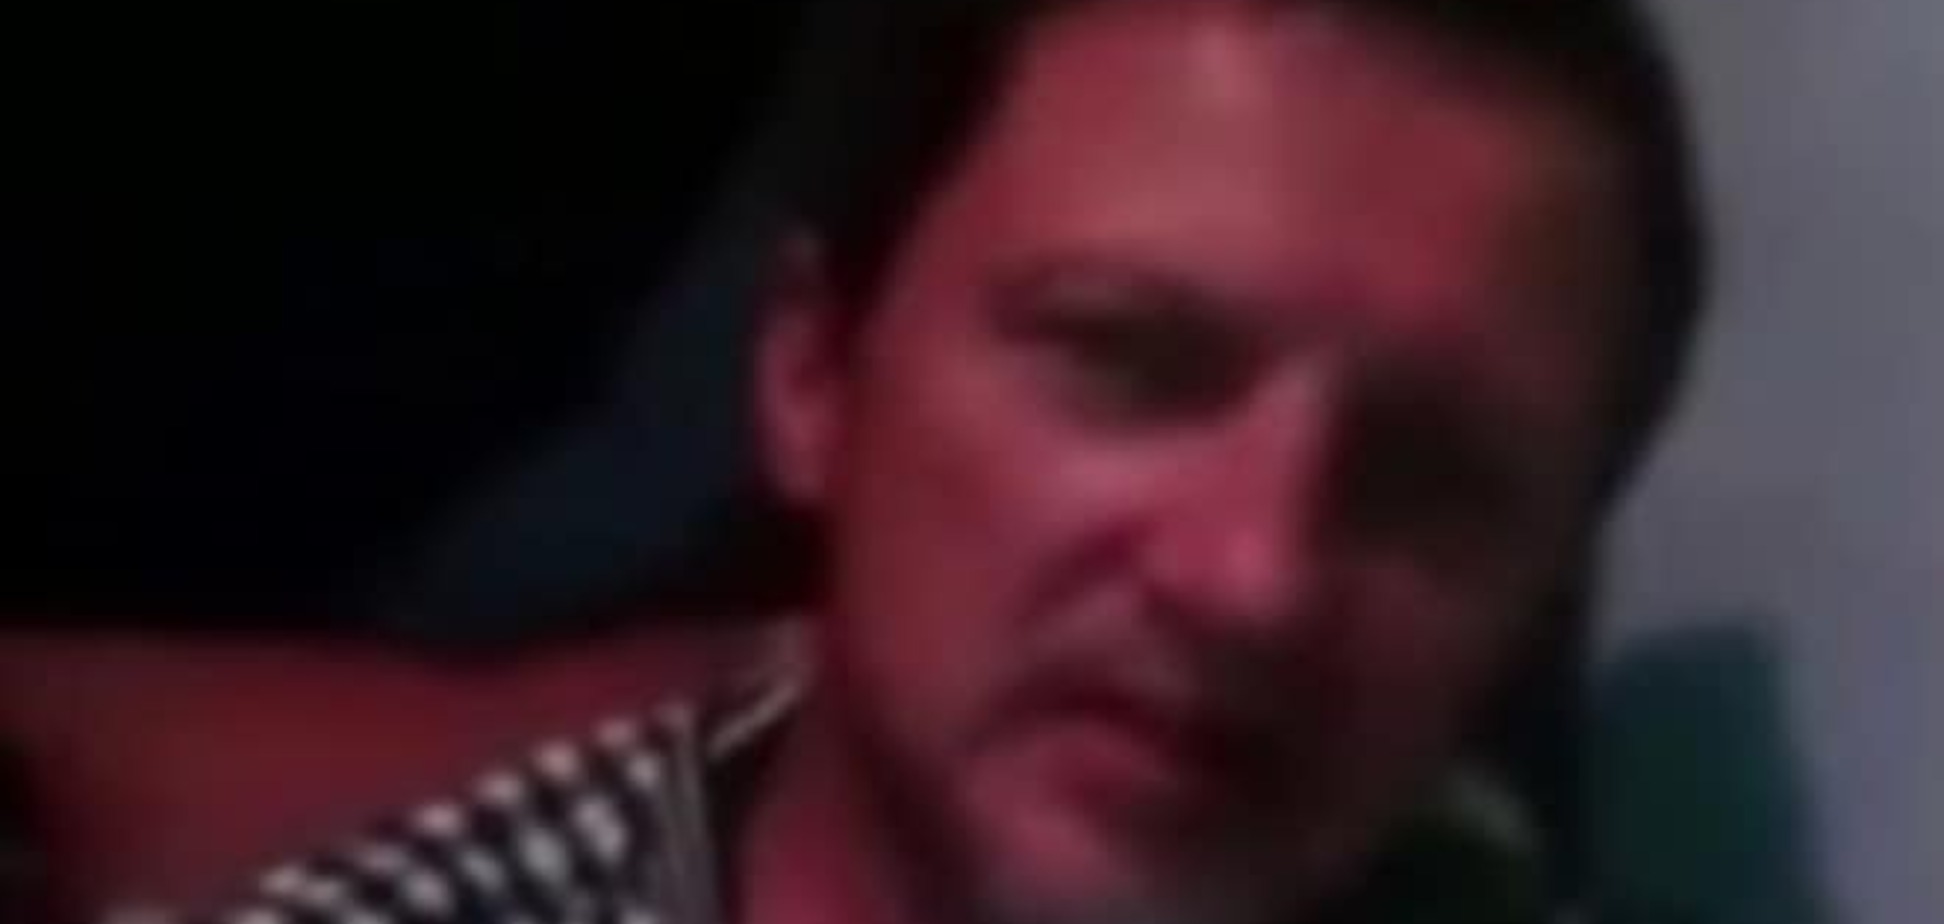 В Афганистане попал в плен украинец: опубликовано его видеообращение